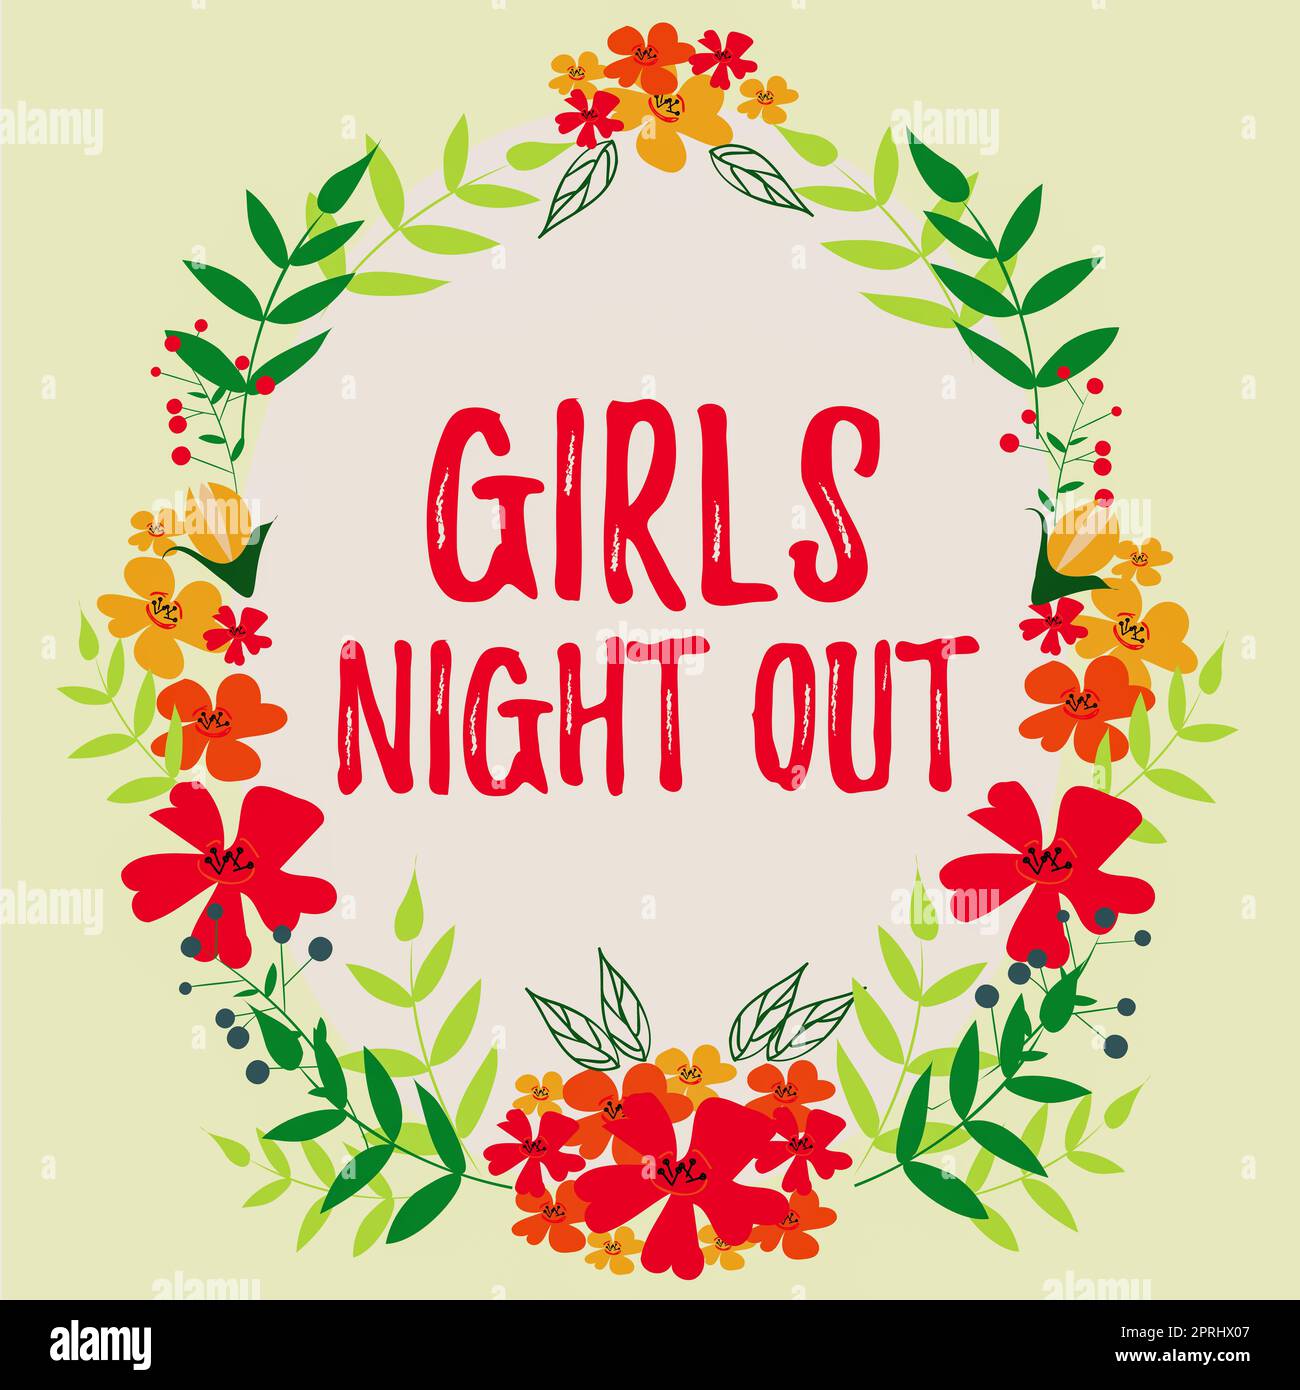 Konzepttitel Girls Night Outfreences und freie Mentalität für die Mädchen der modernen Zeit. Unternehmerischer Ansatz Freiheiten und freie Mentalität für Mädchen in der modernen Zeit Stockfoto